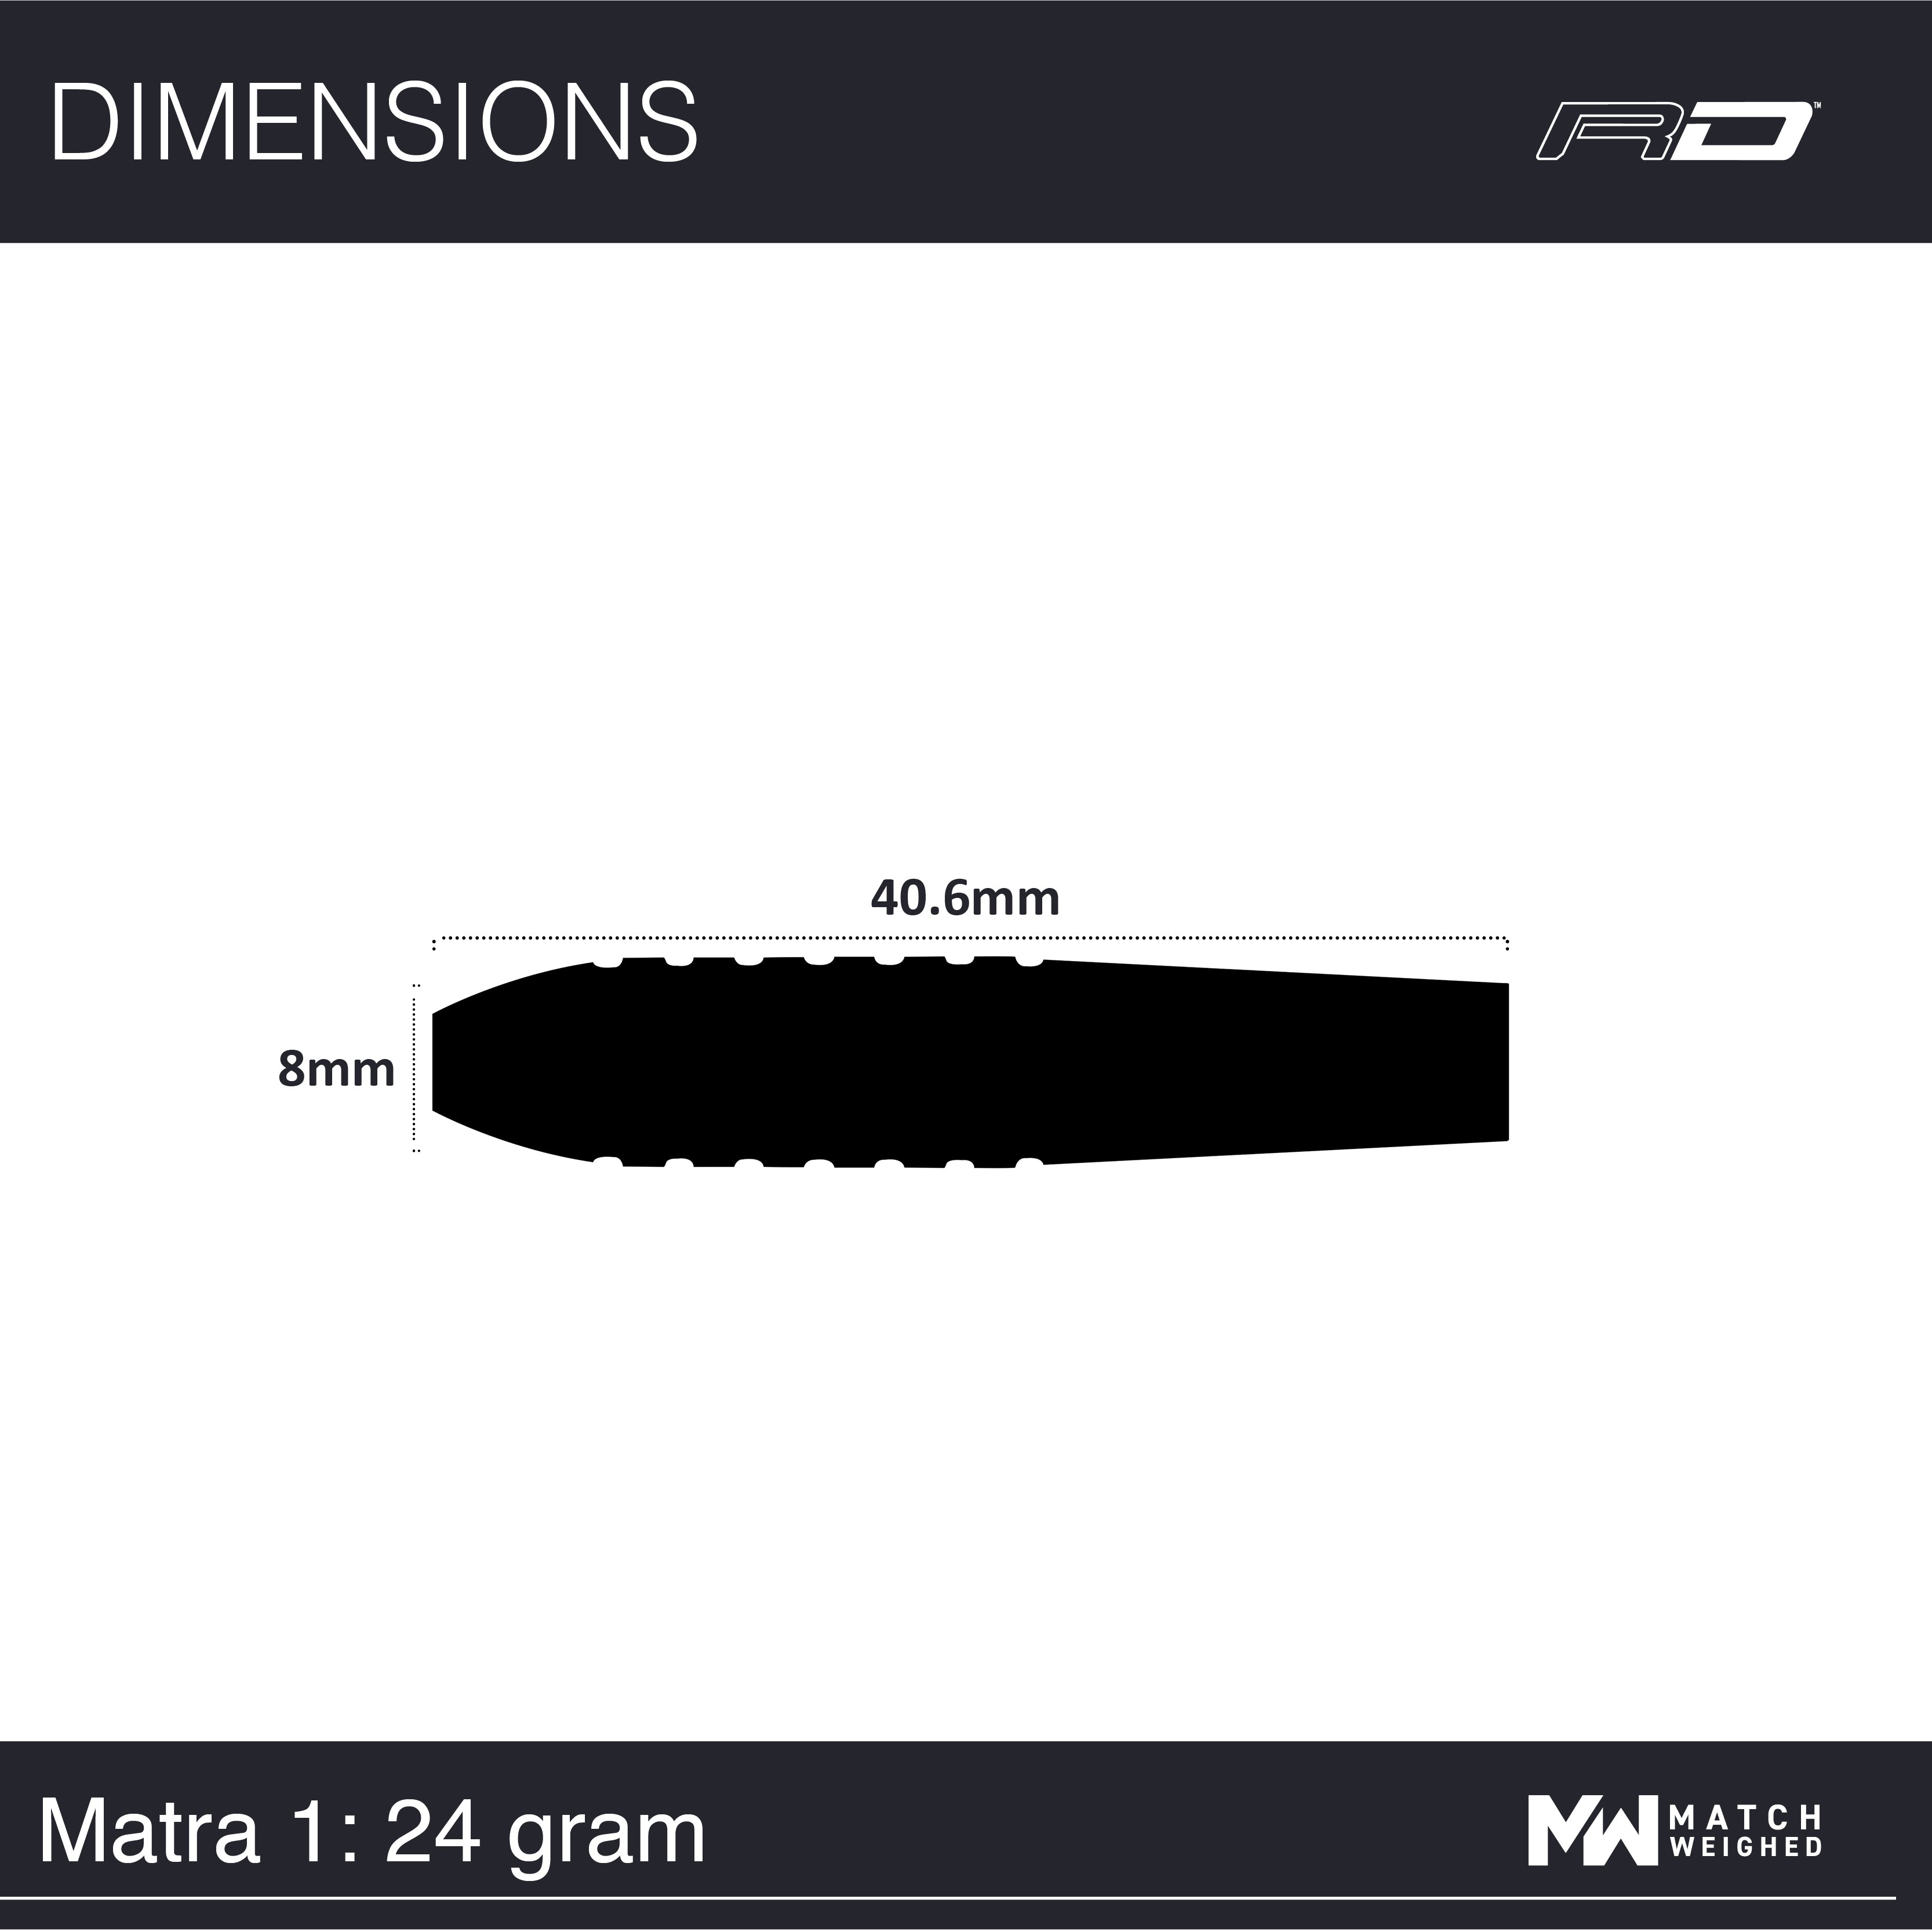 RDD0040_Matra 1 24g - Image 7.jpg